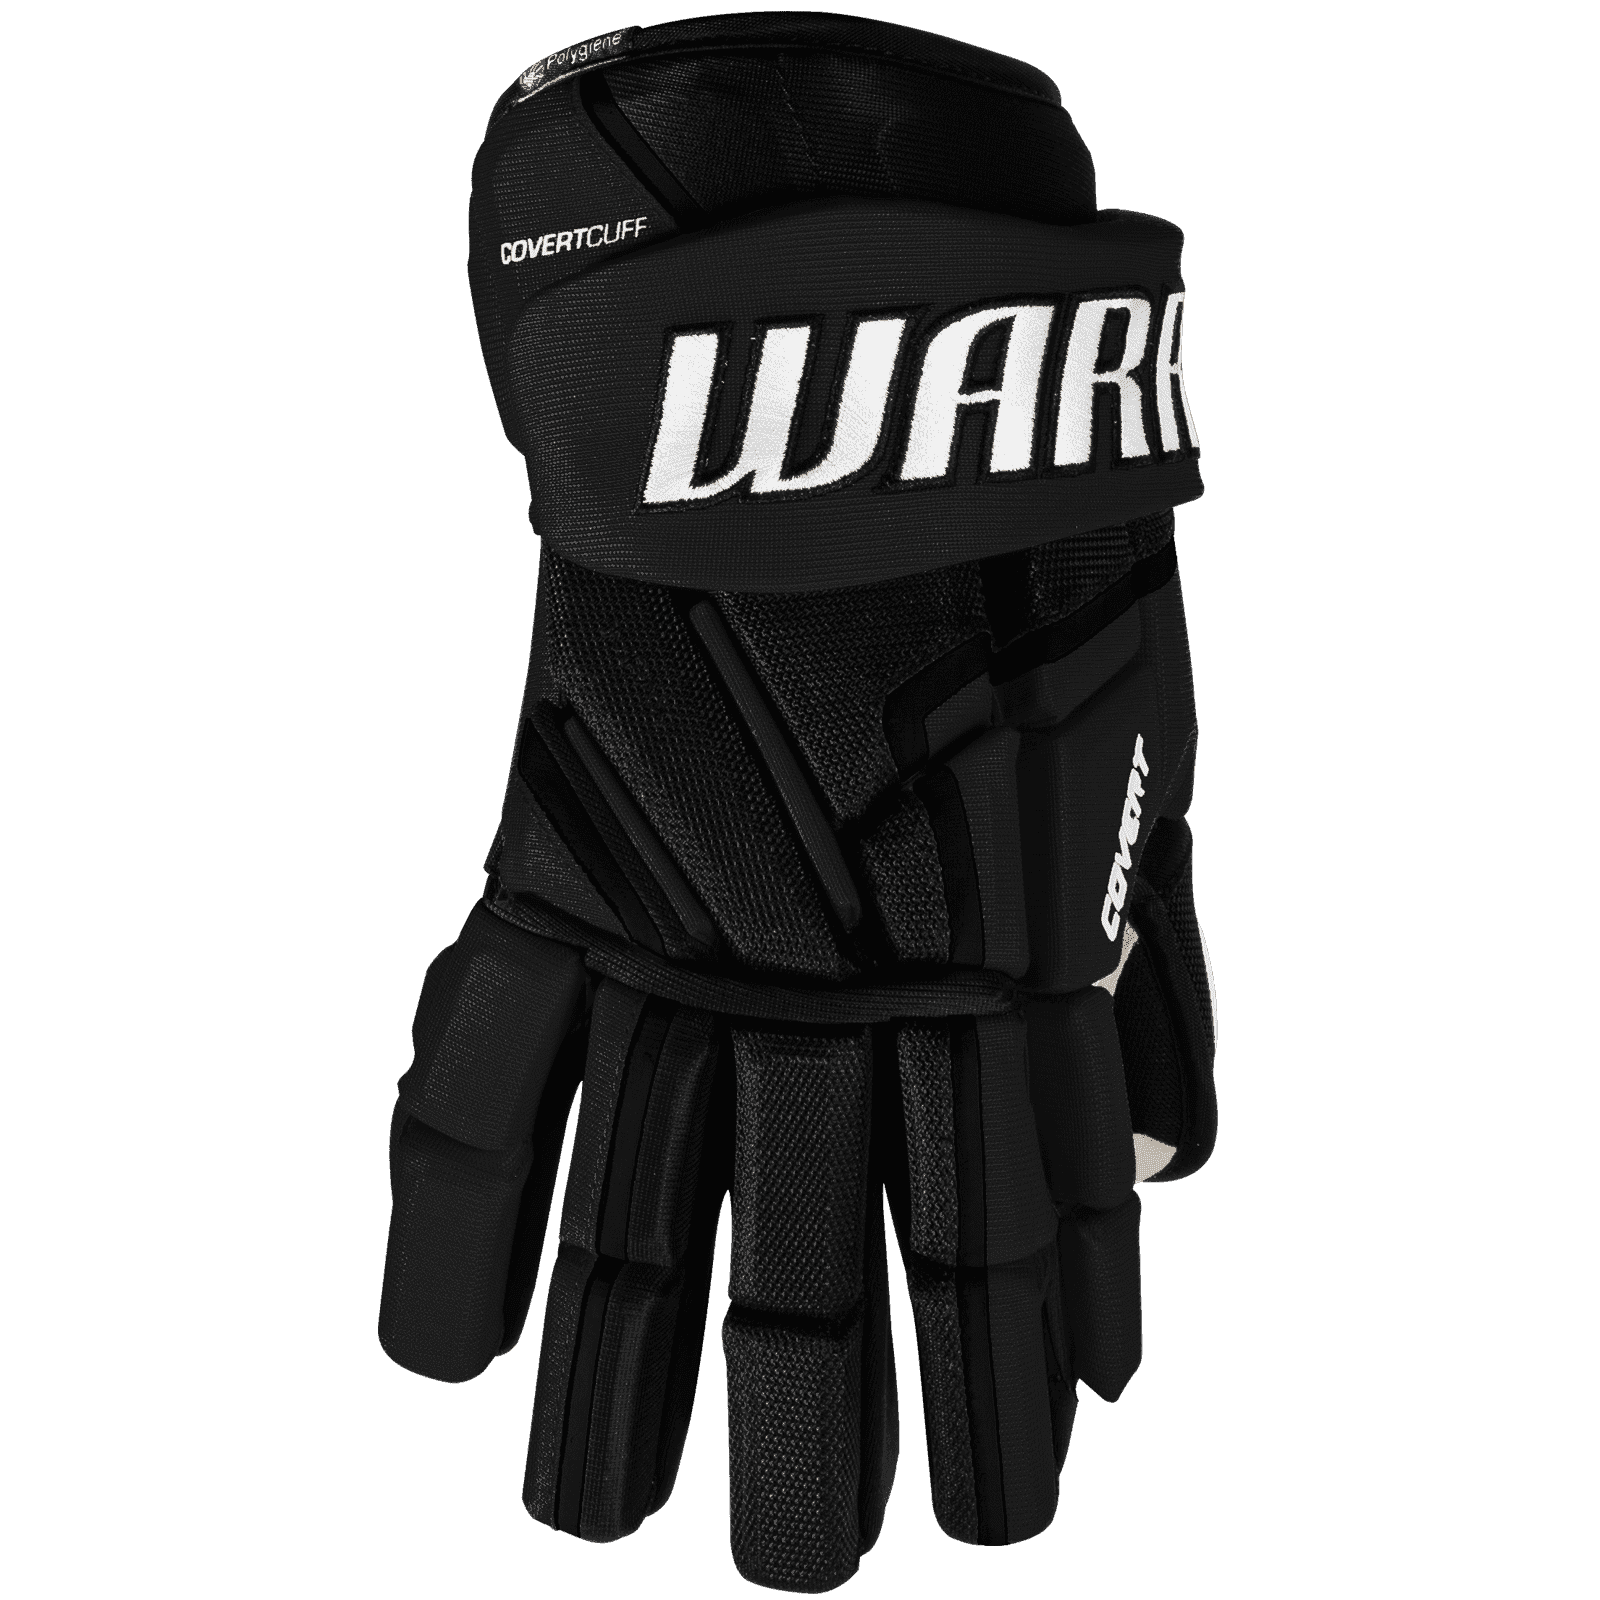 Handschuhe Warrior Covert QR5 20 JR 